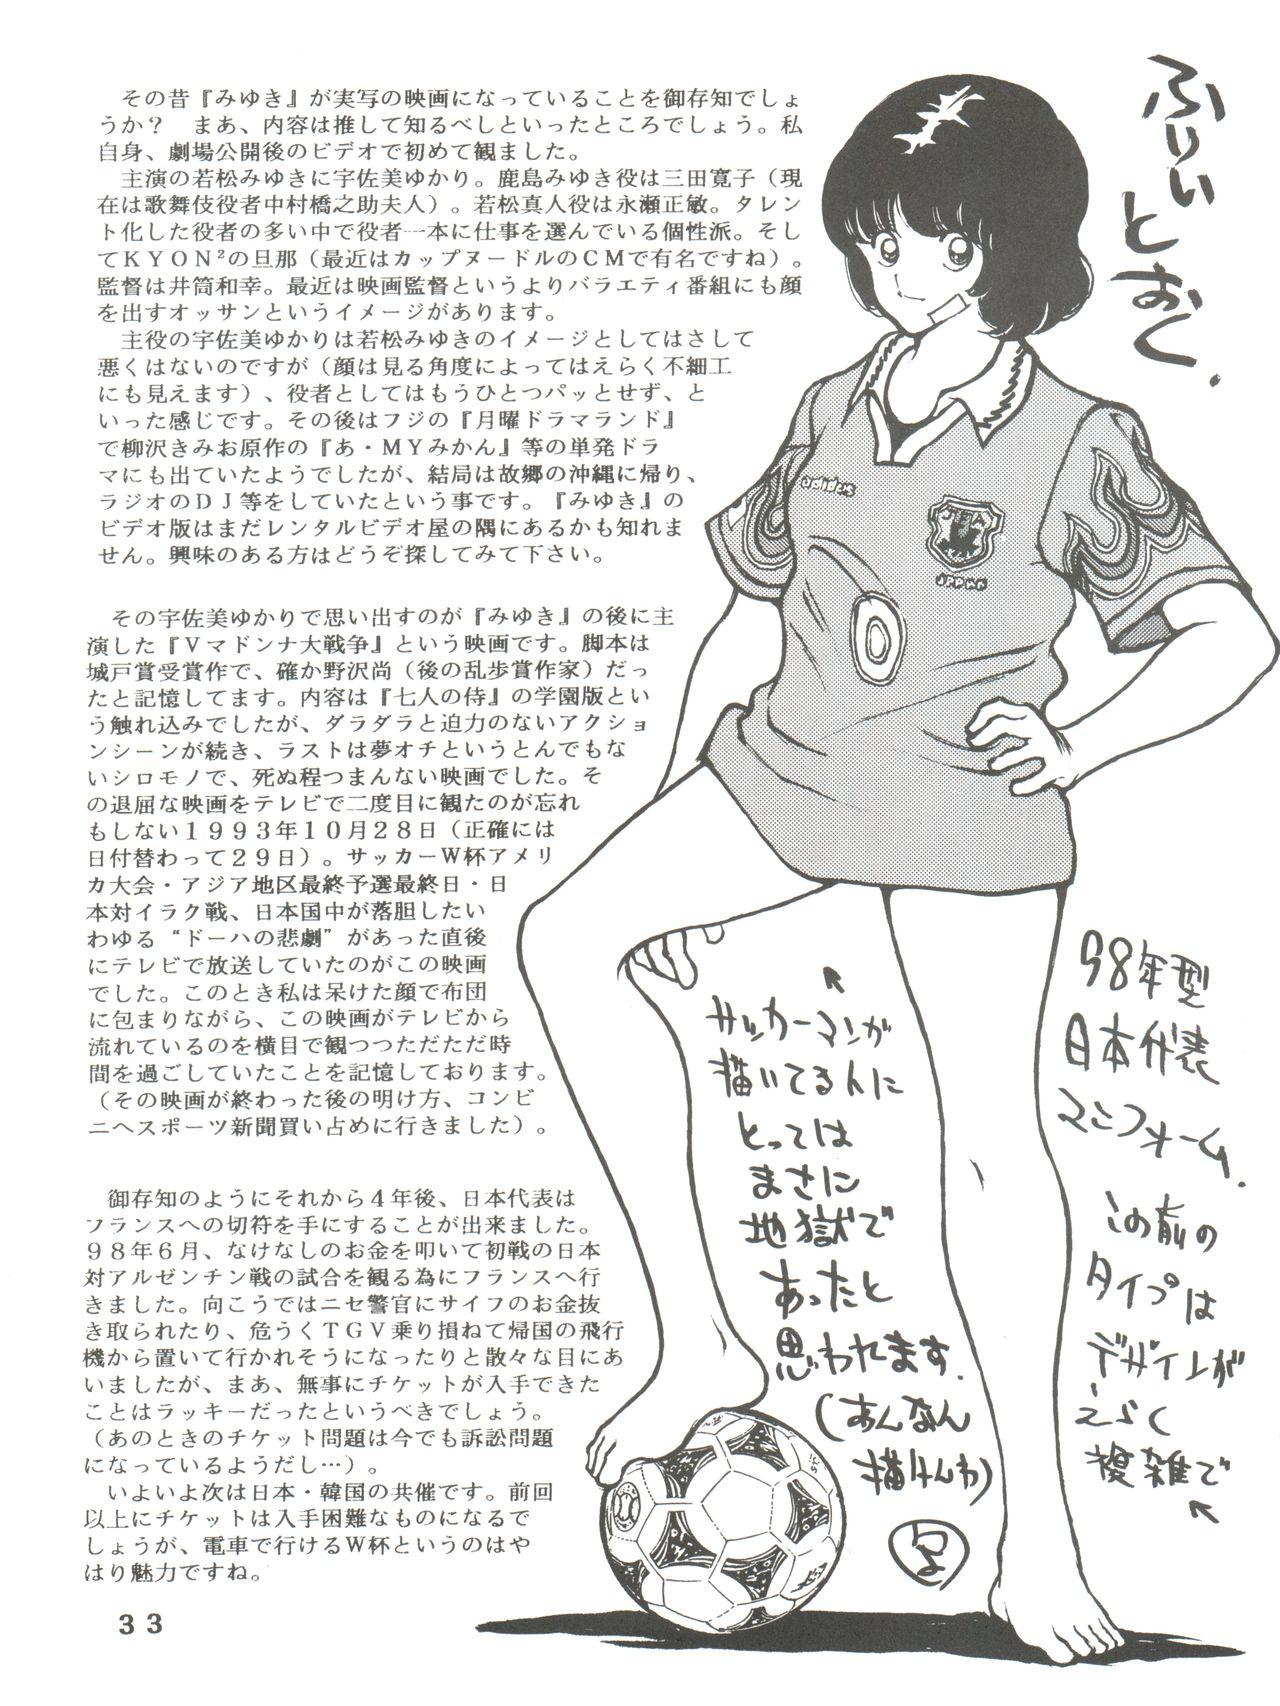 [STUDIO SHARAKU (Sharaku Seiya)] Kanshoku -TOUCH- vol.5 (Miyuki) [2000-08-13] 32